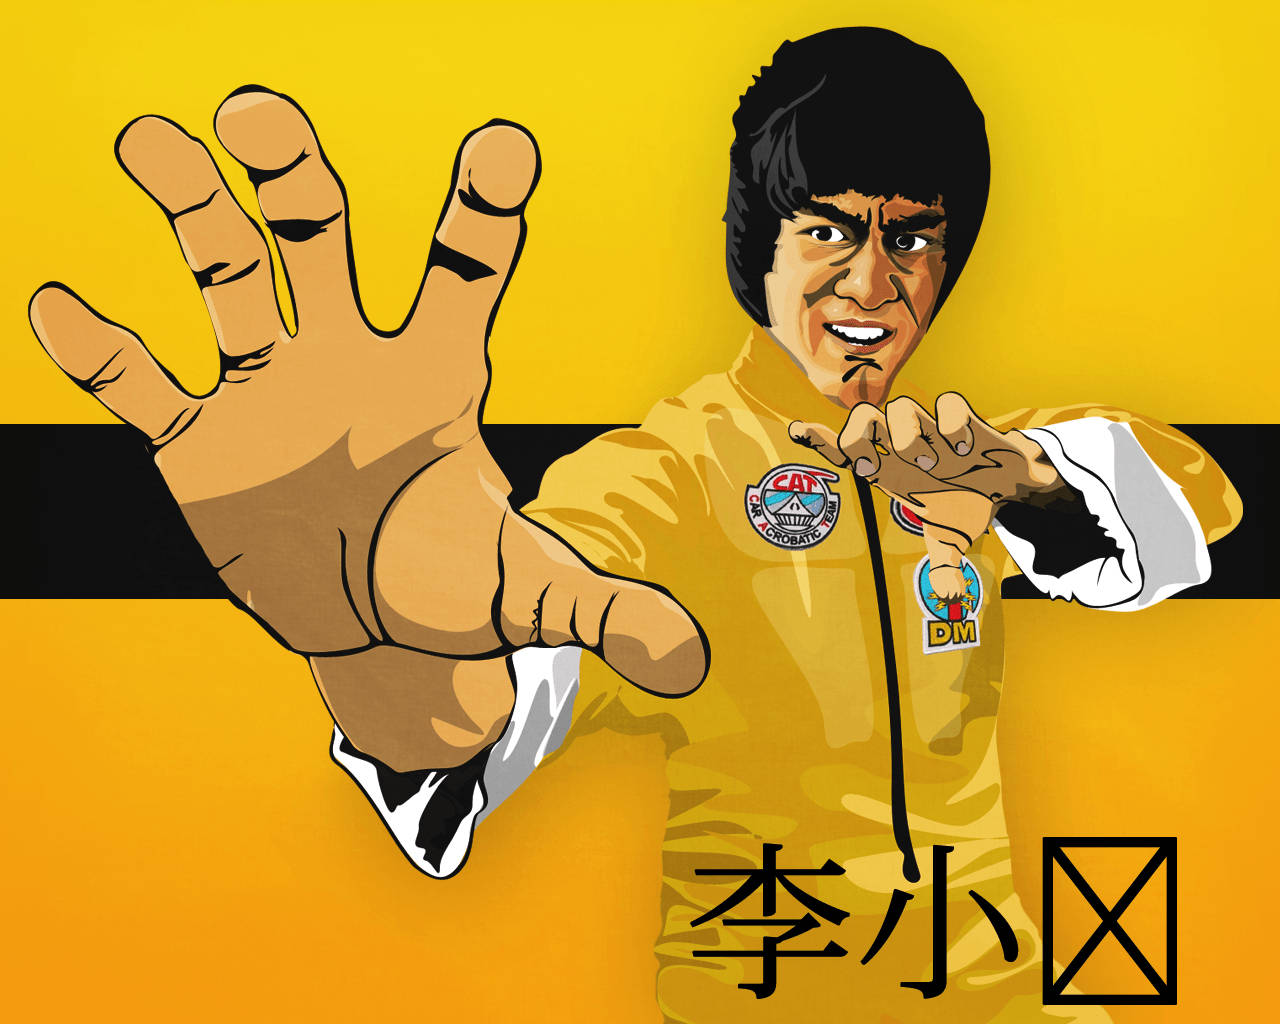 Fun Yellow Bruce Lee Art